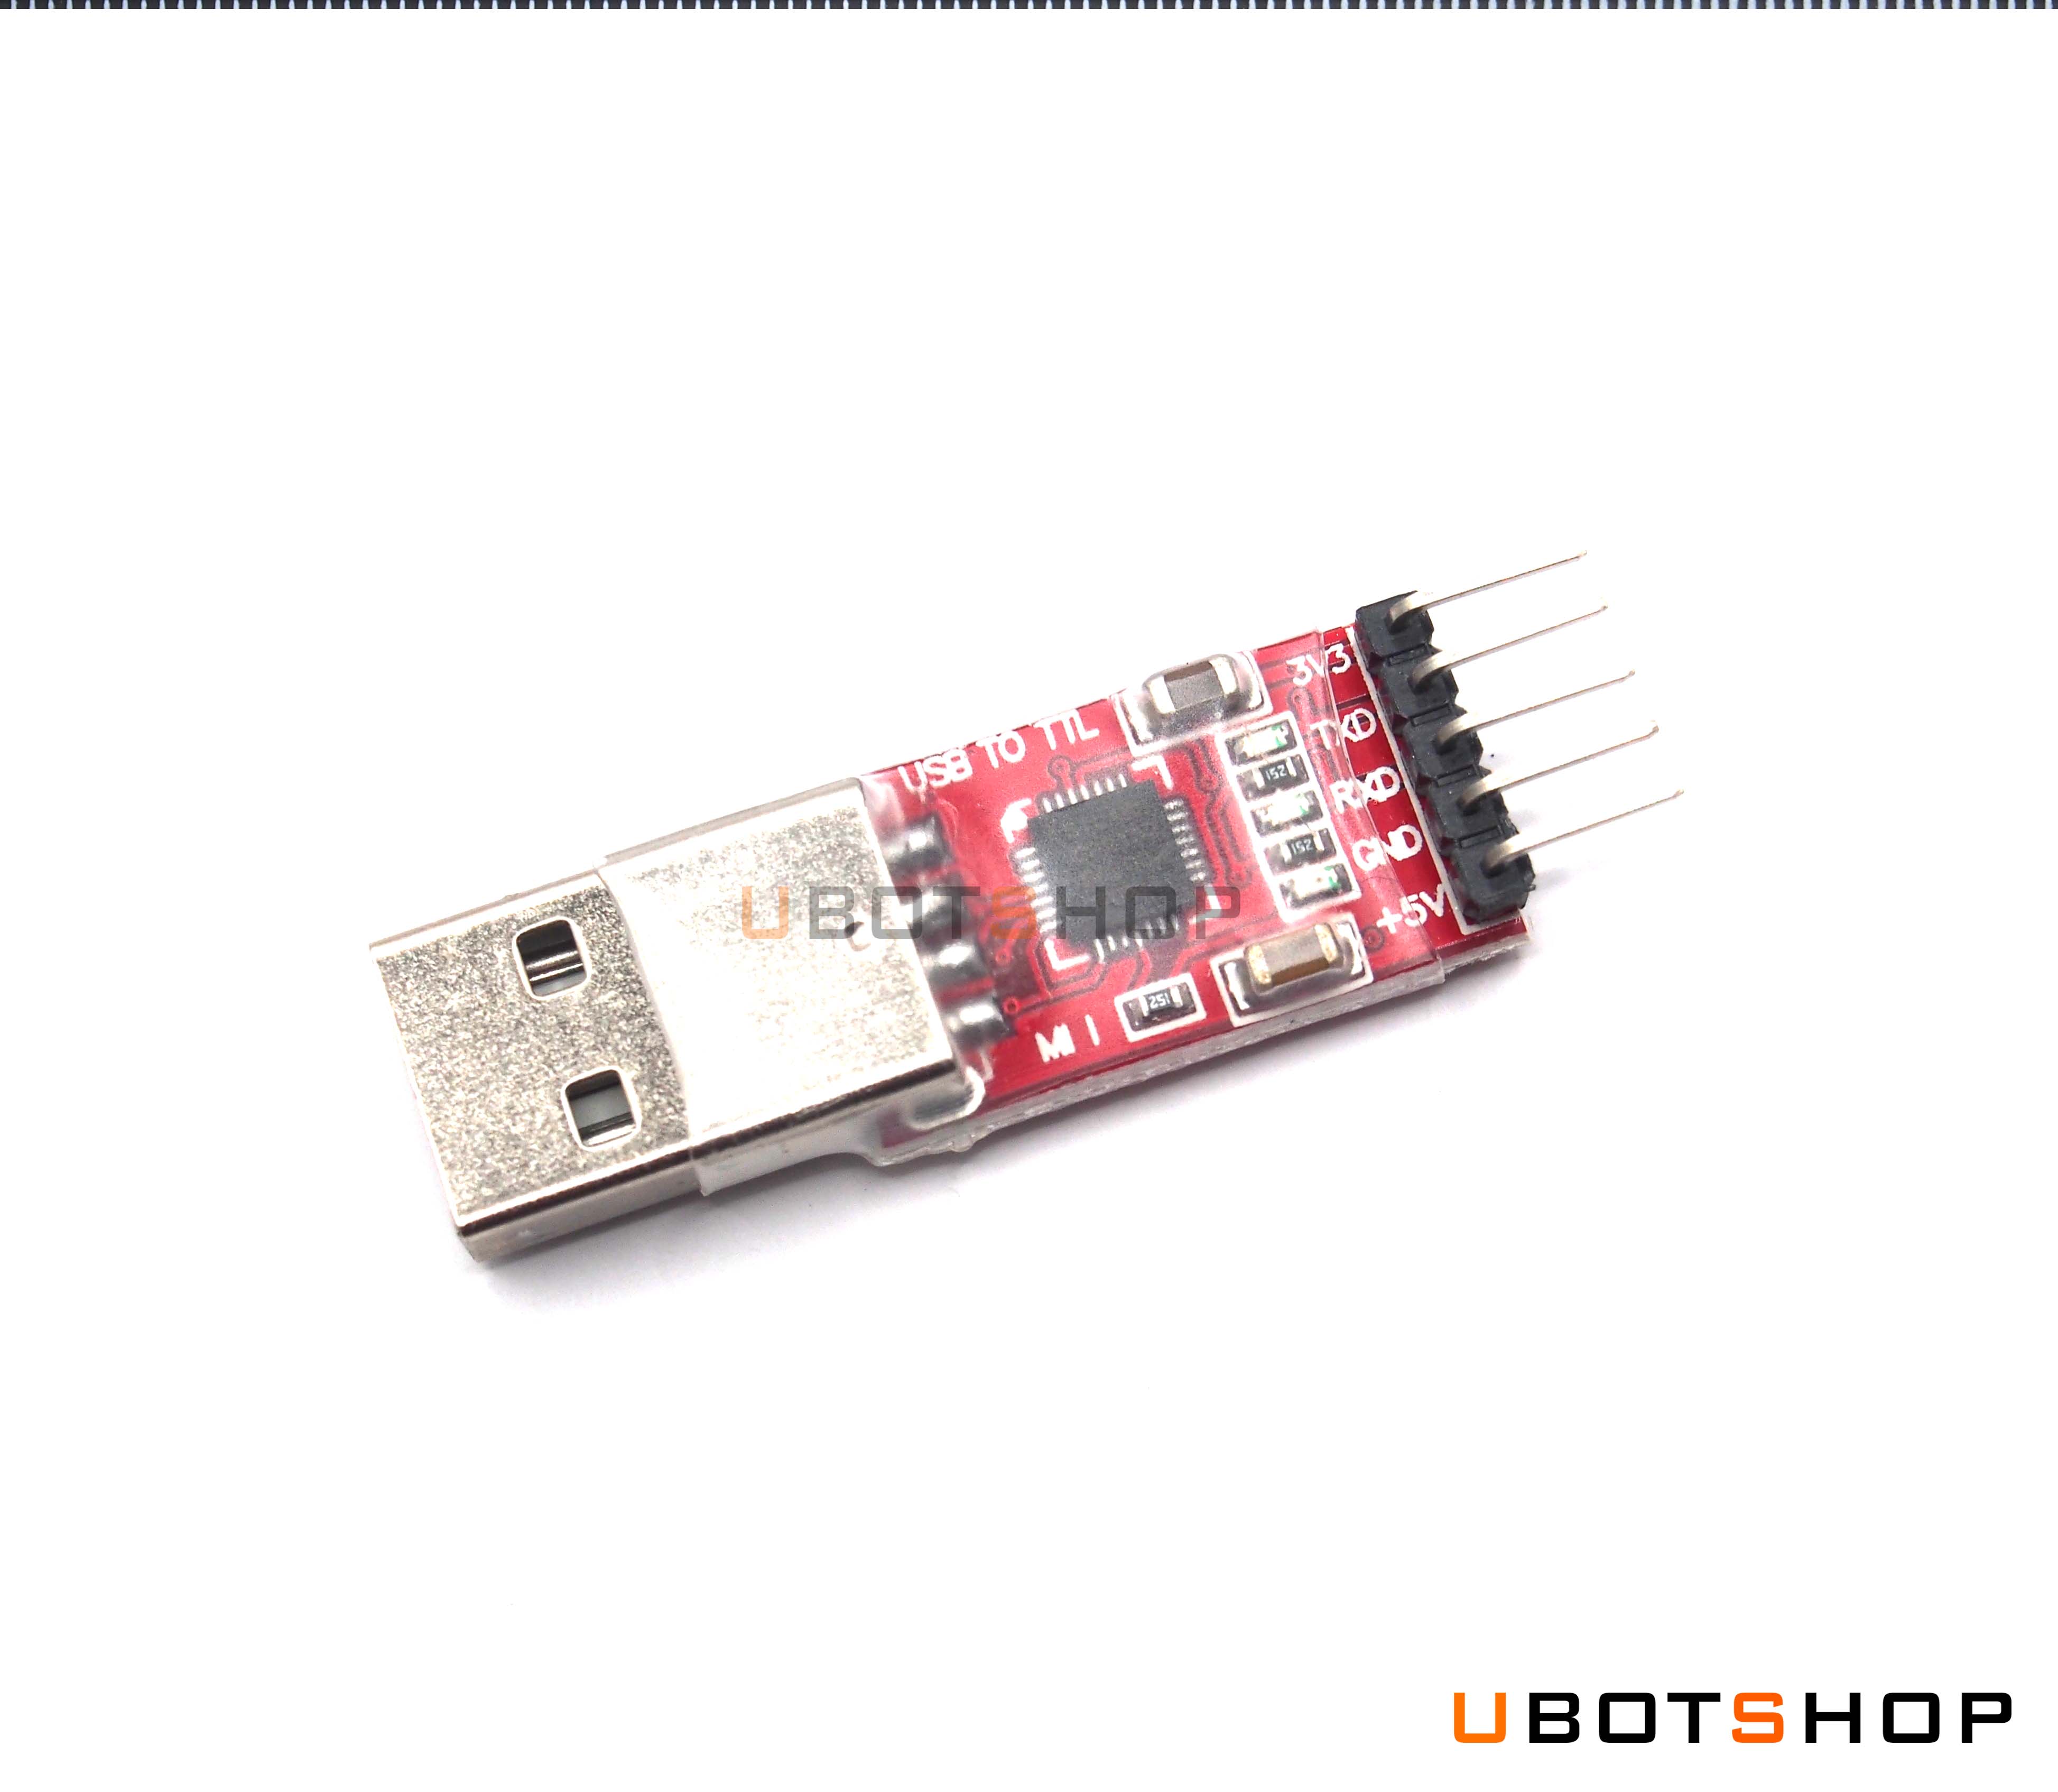 USB-TTL module CP2102 Red (MU0006)